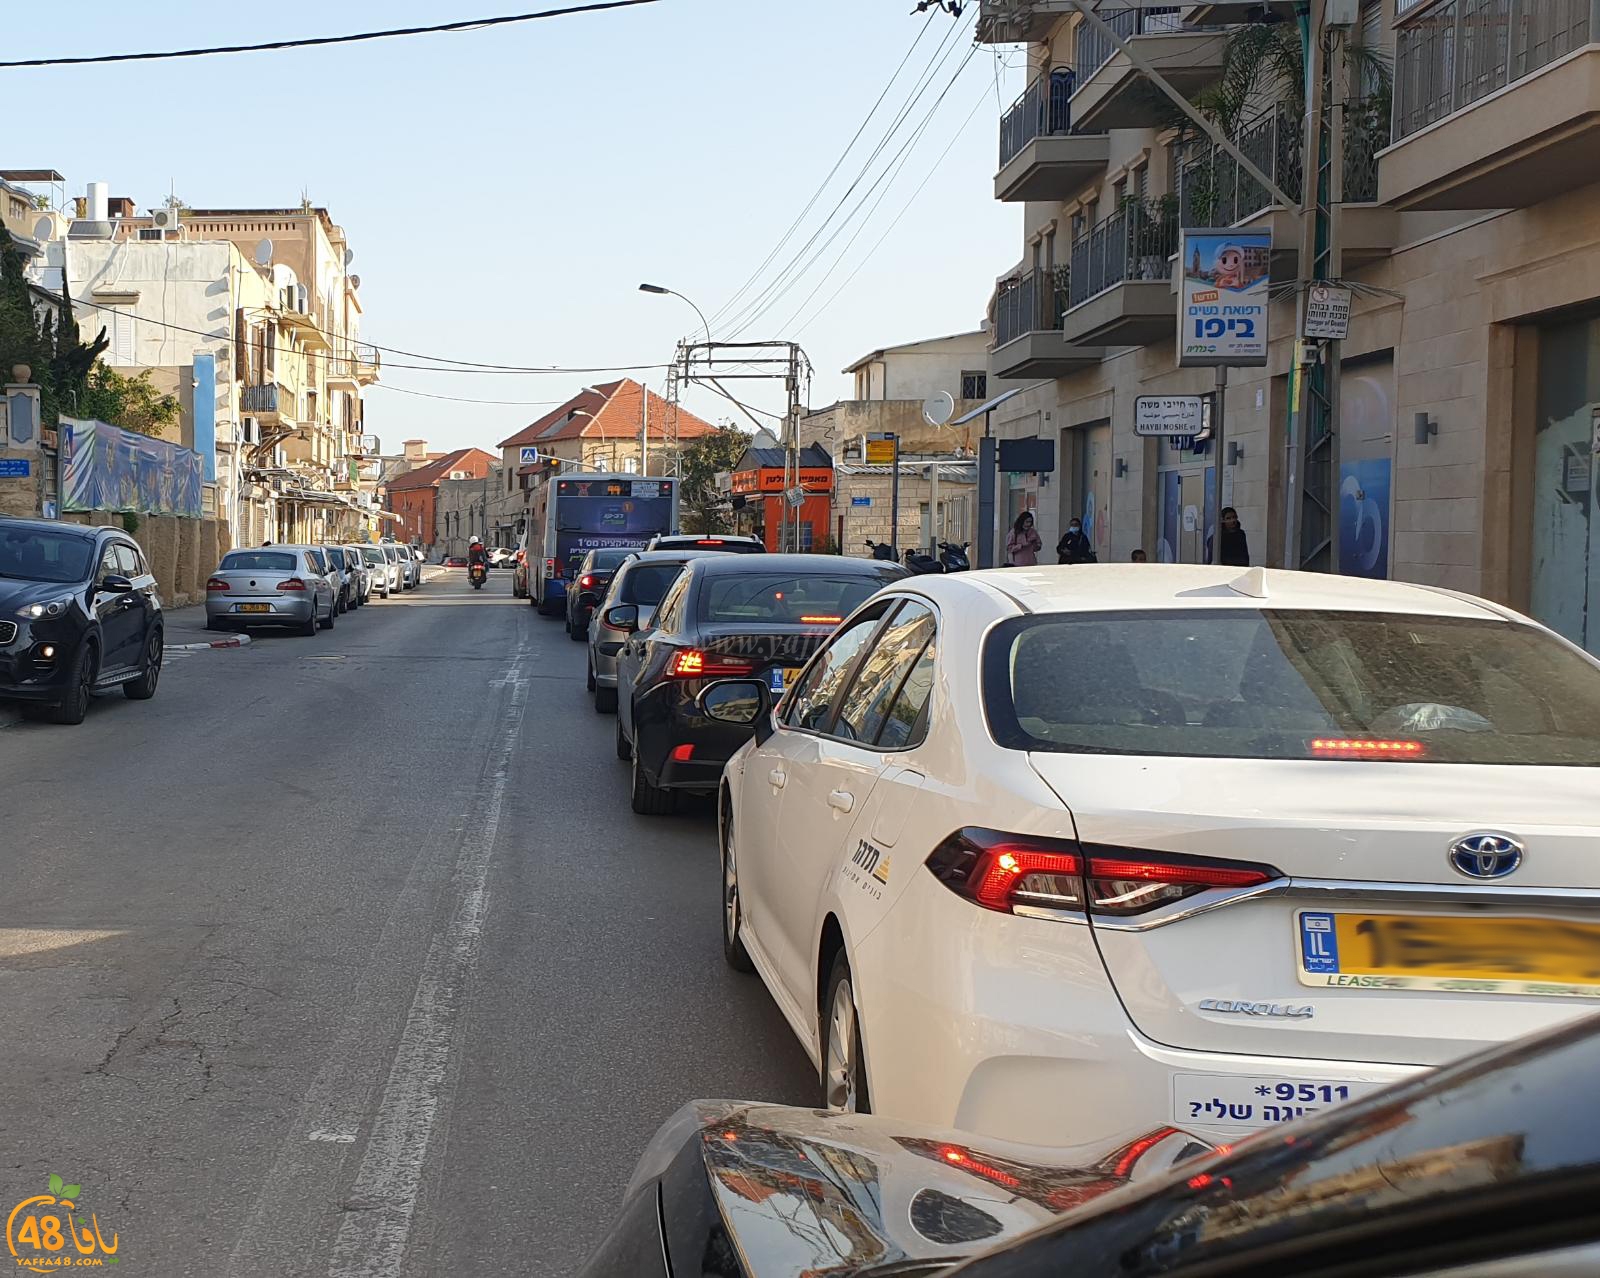 يافا: ازدحامات مرورية صباحية في شارع ييفت تحوّل الحياة الى كابوس